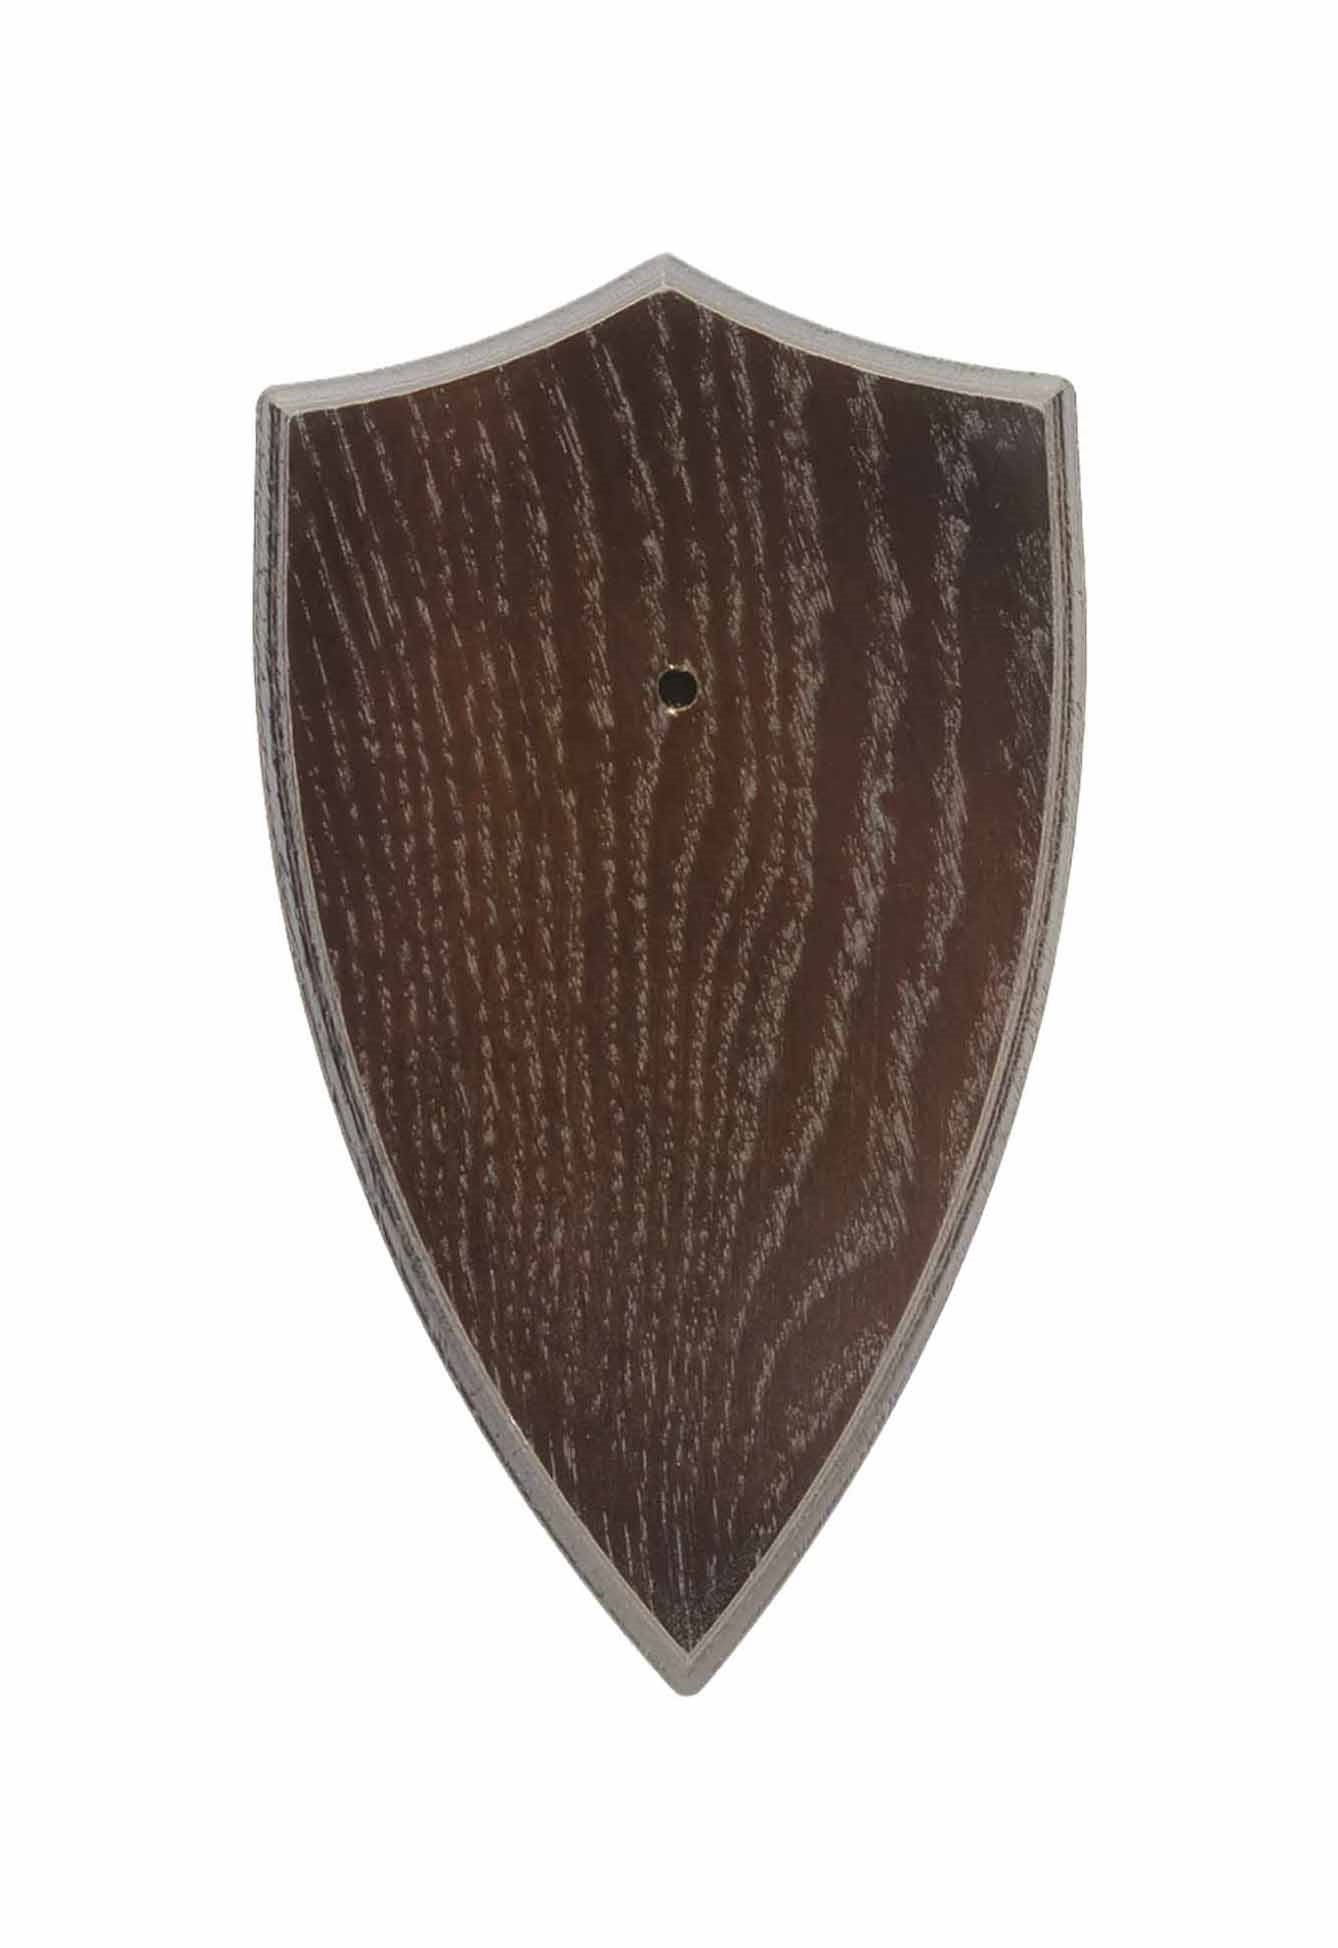 Dubová podložka pod trofej Oak 5 20x12 cm - tmavá  